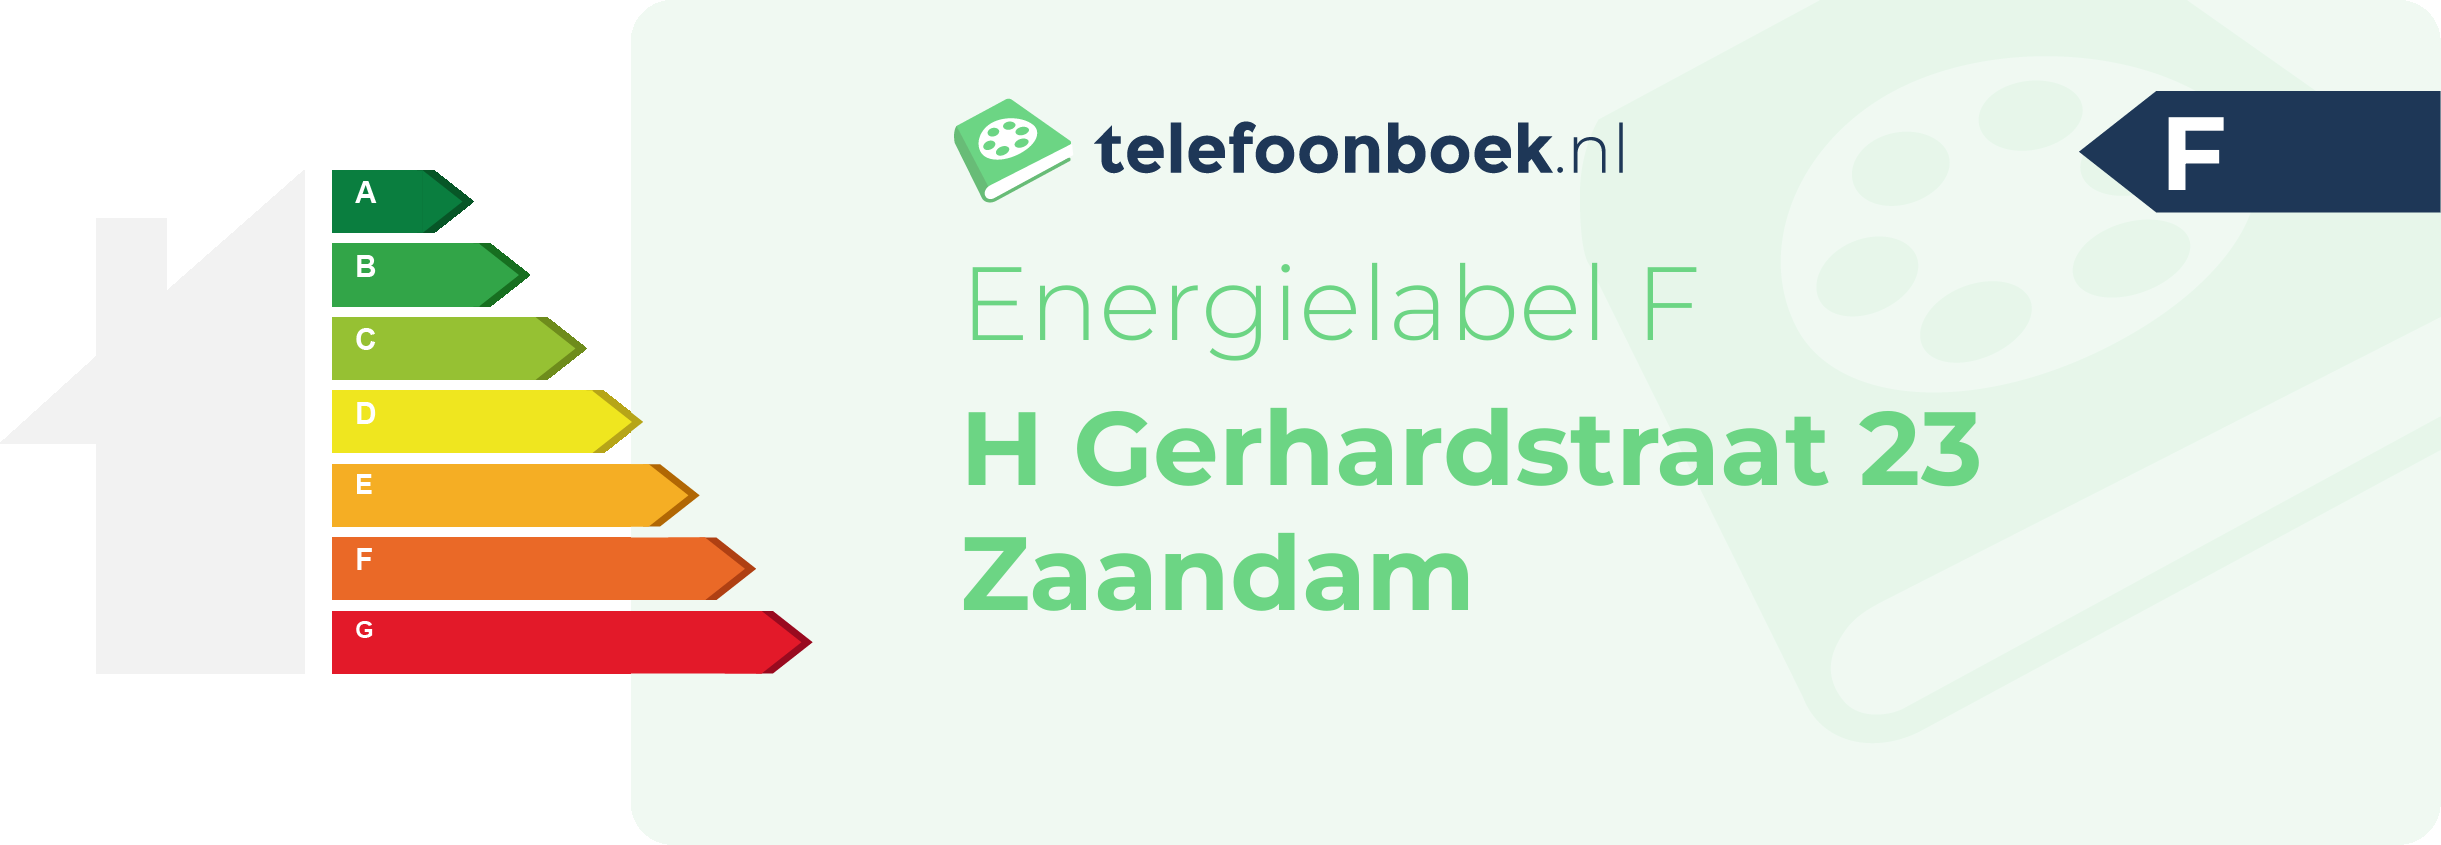 Energielabel H Gerhardstraat 23 Zaandam